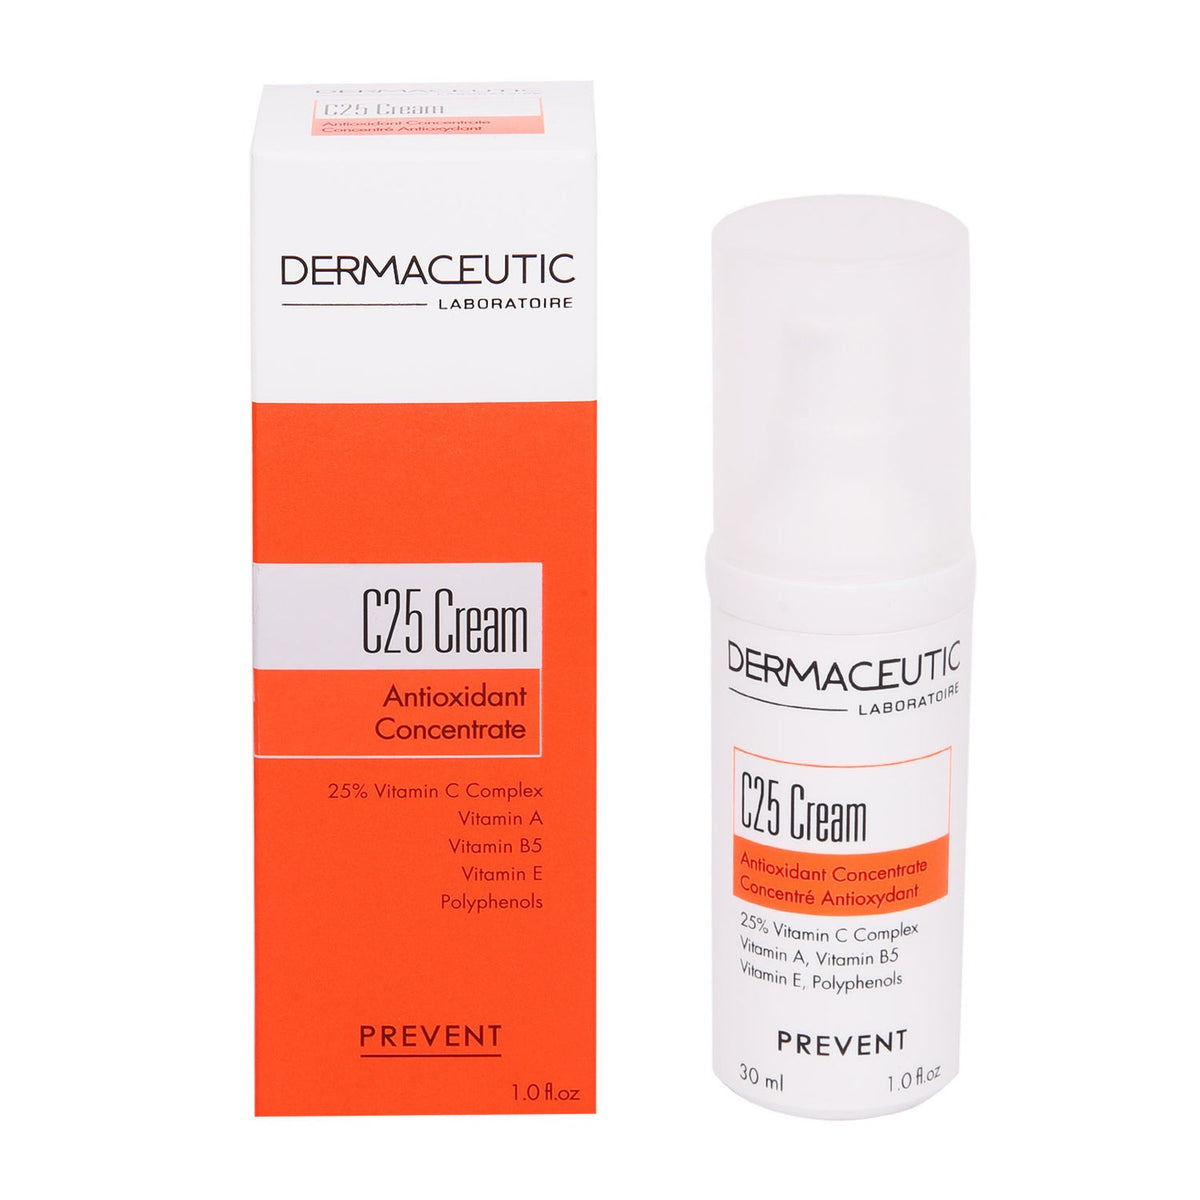 DERMACEUTIC C25 Cream - Antioxidant Concentrate (1 x 30ml)